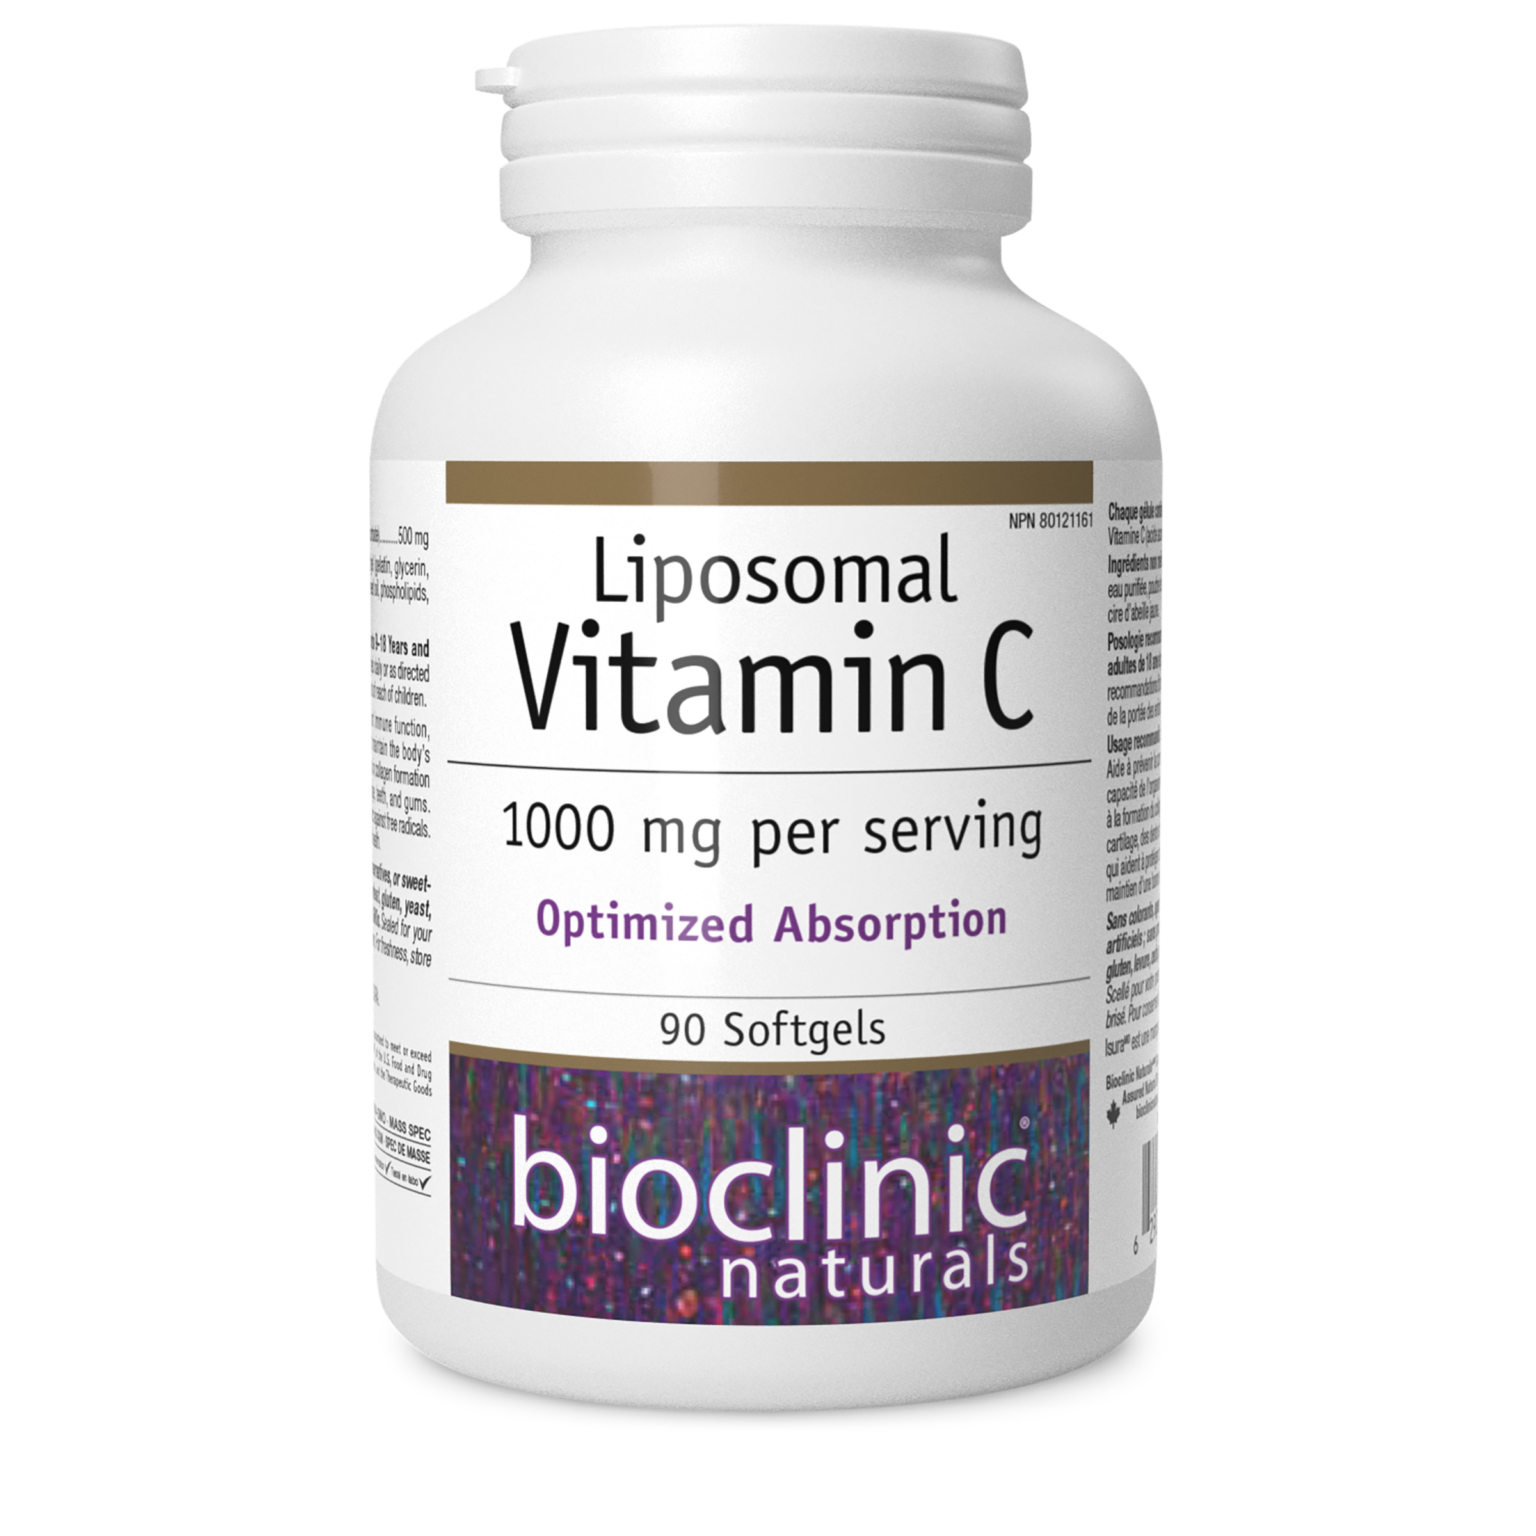 BioClinic Naturals Liposomal Vitamin C (90 softgels)